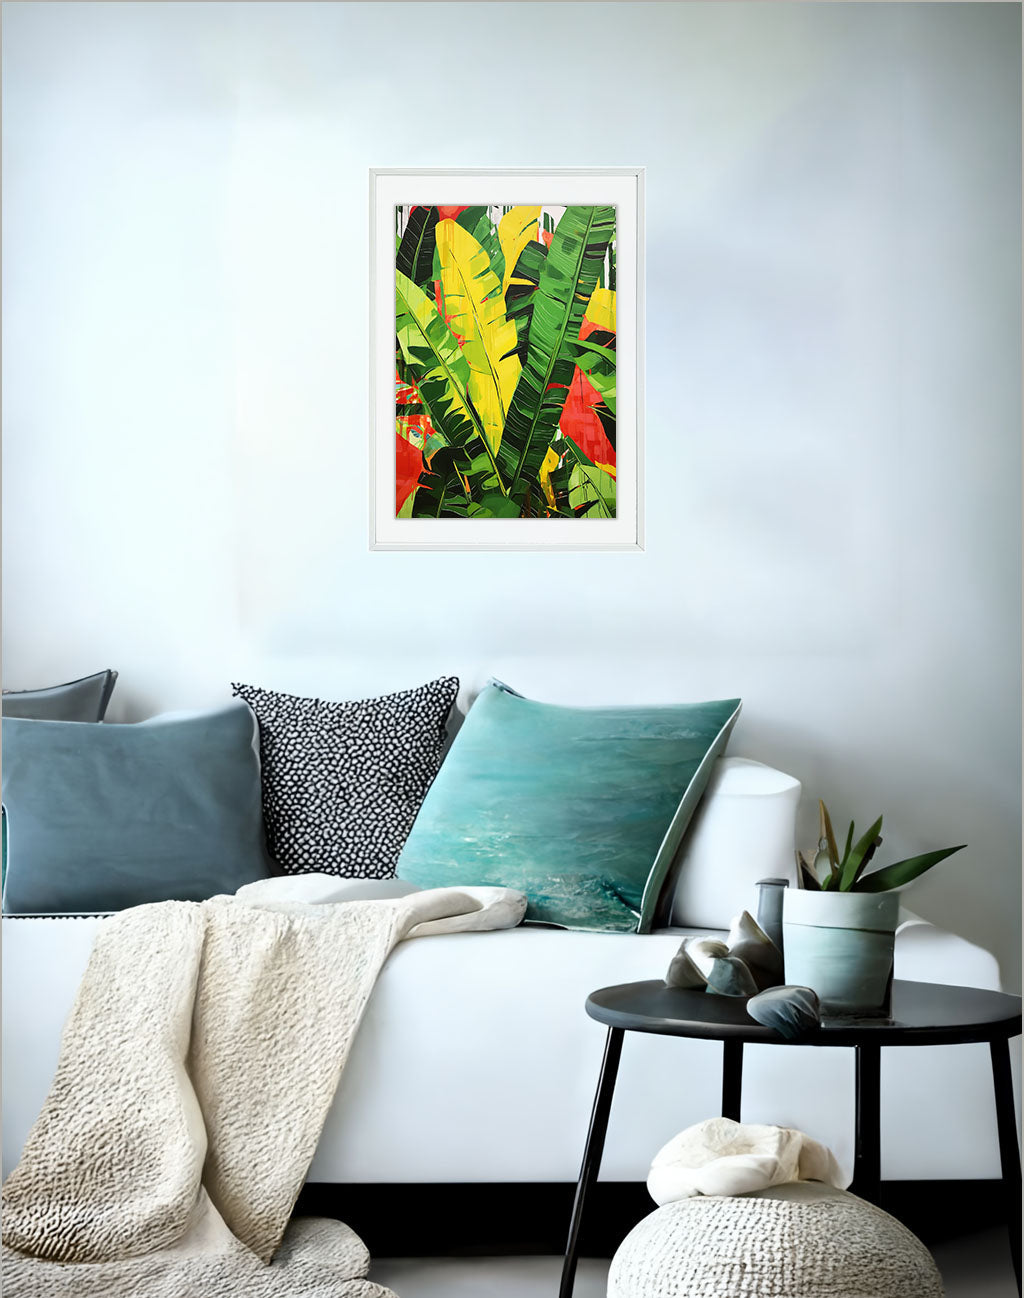 バナナのアートポスター:banana_fa51 / キッチン_フルーツと野菜_のポスター画像ソファ近くに設置したイメージ